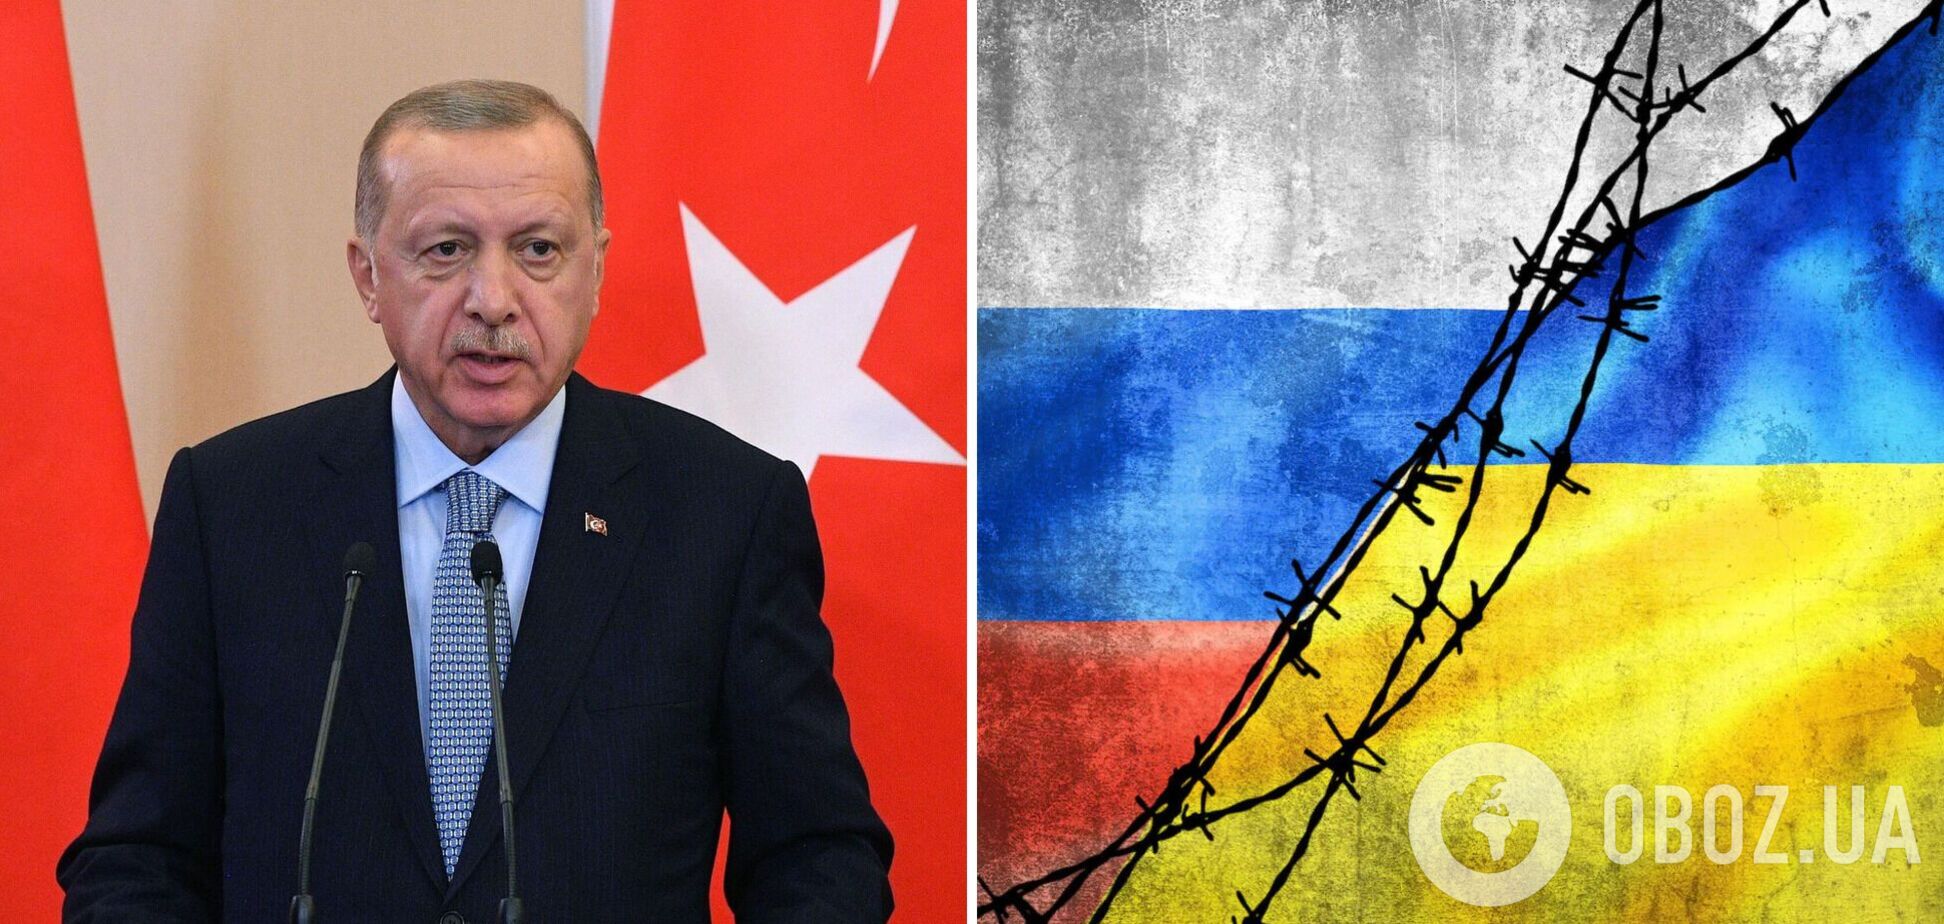 Ердоган: війна в Україні має завершитися мирними перемовинами на основі територіальної цілісності країни